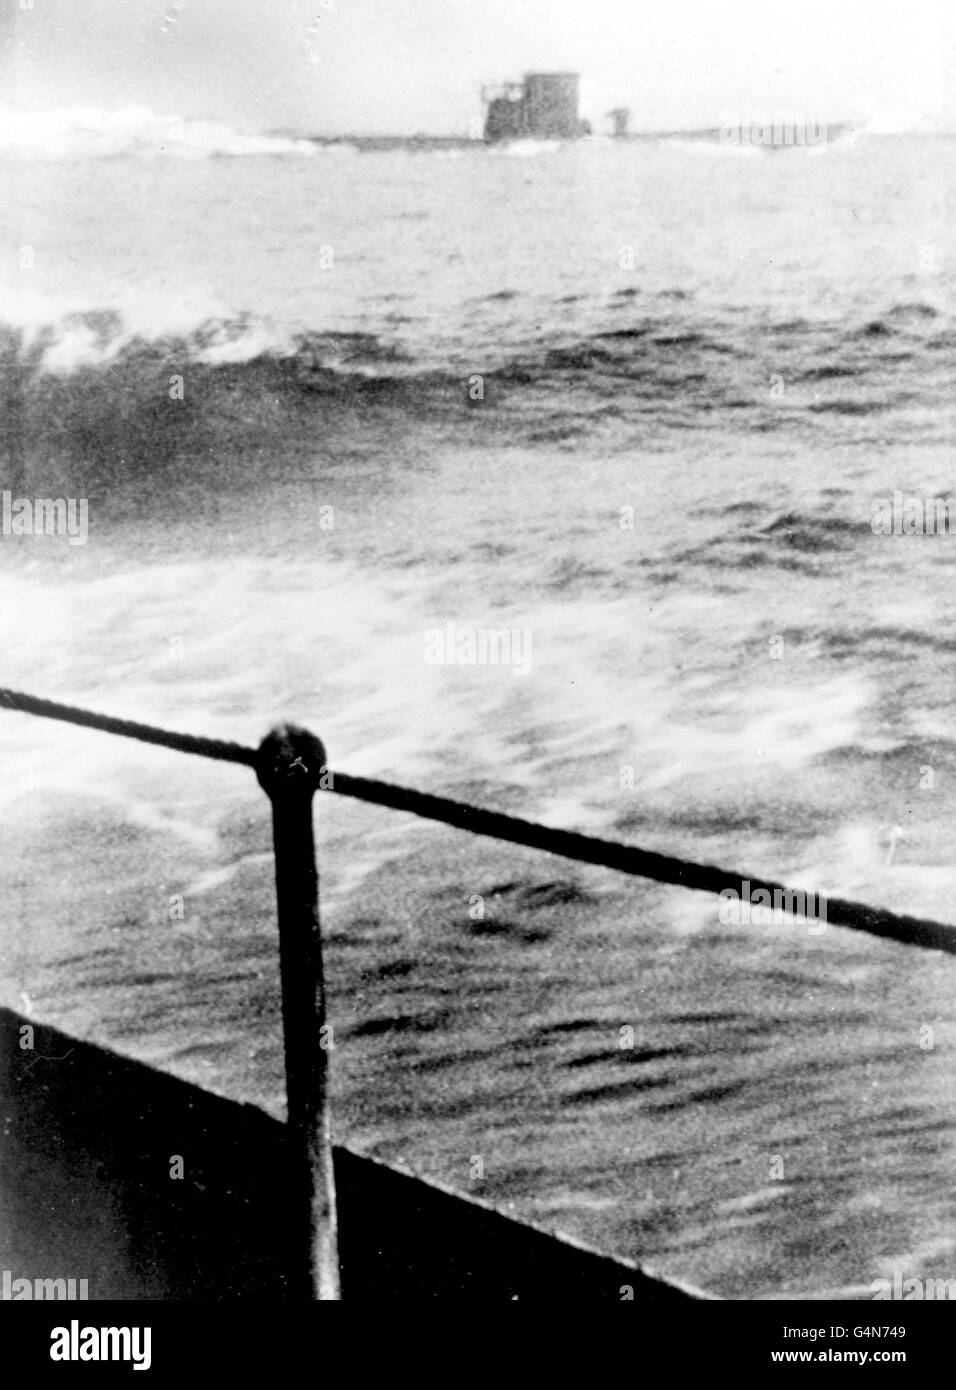 c19/9/1942: Une photo rare prise d'une Corvette canadienne montrant un U-Boat allemand (sous-marin) faisant un effort pour s'échapper pendant la Seconde Guerre mondiale. Le U-Boat a été pris après un combat de surface dans lequel des charges de profondeur et des canons ont été utilisés. Peut-être U210 ou U379. Banque D'Images